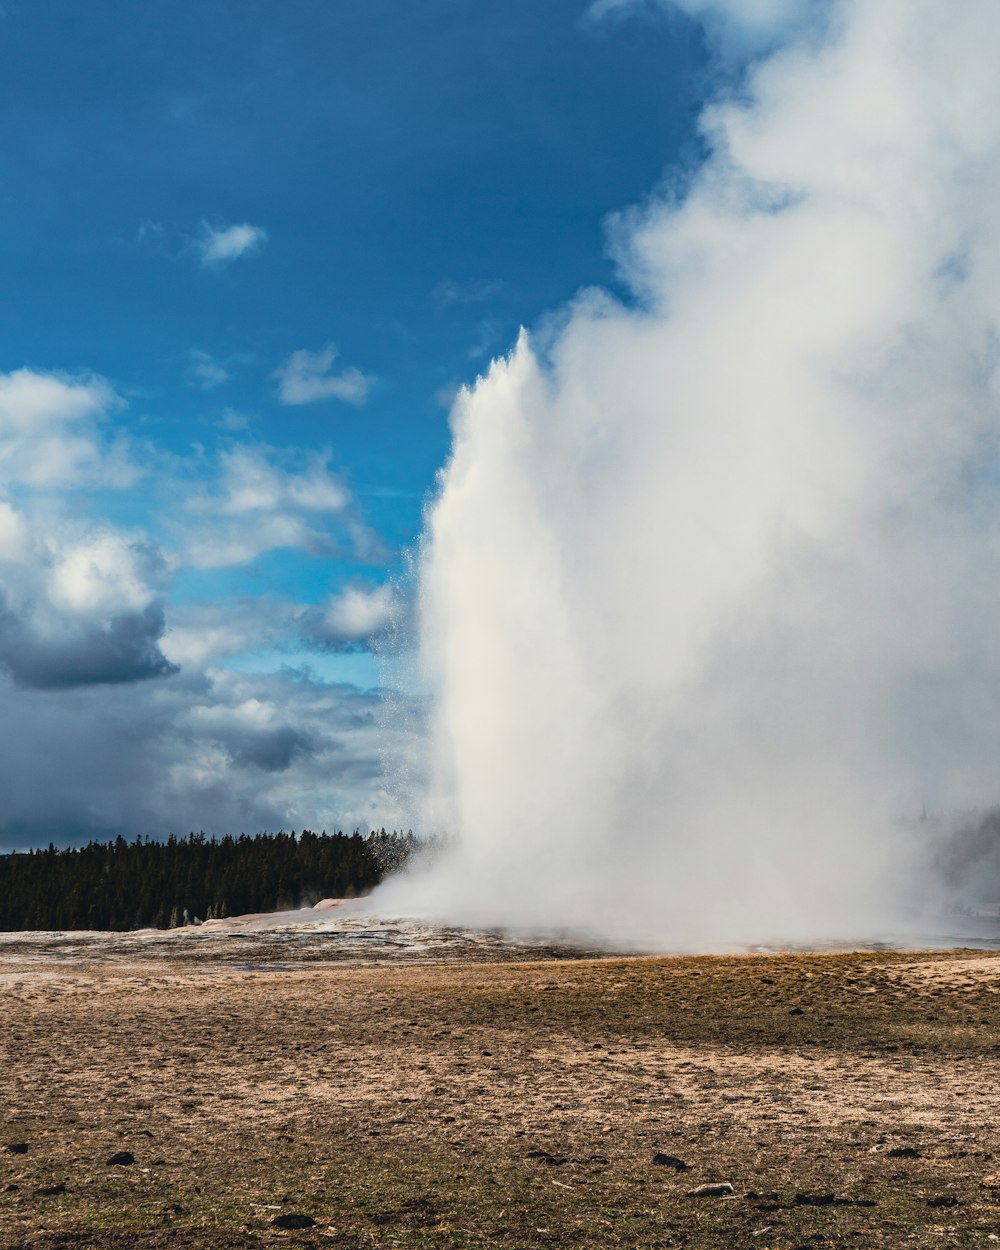 Un grande geyser che vomita acqua nel cielo